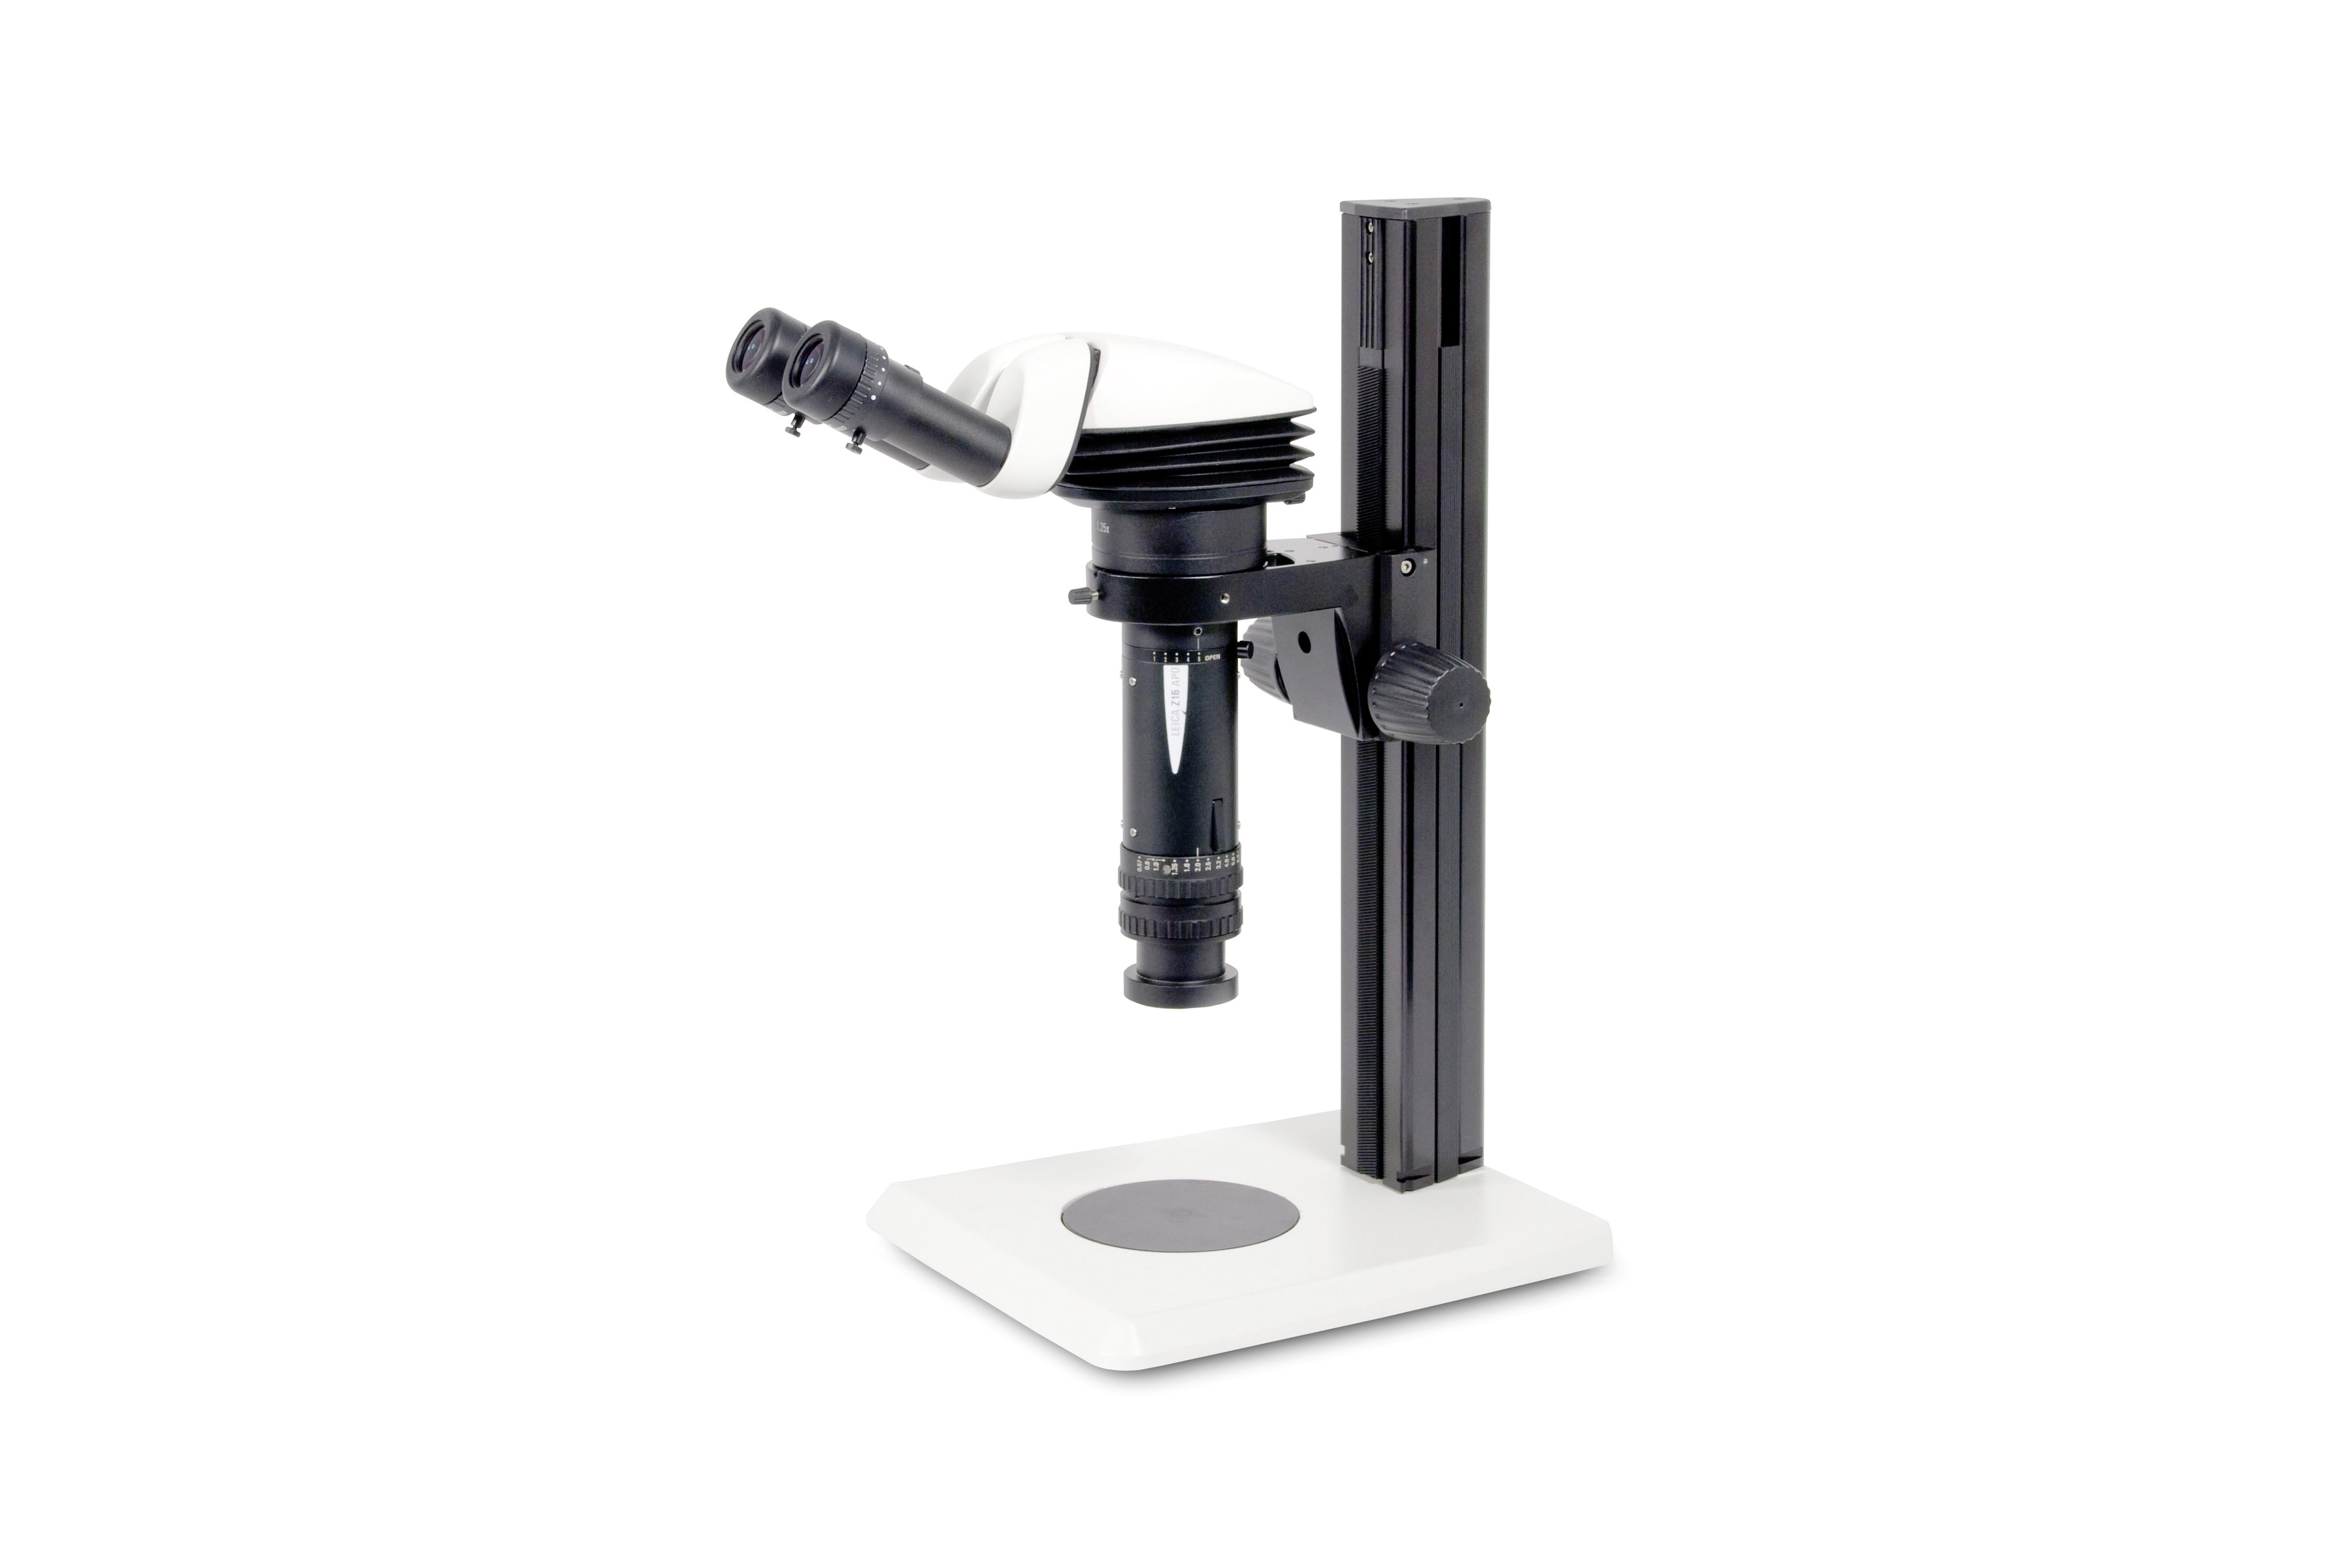 Leica Z16 APO 立体显微镜